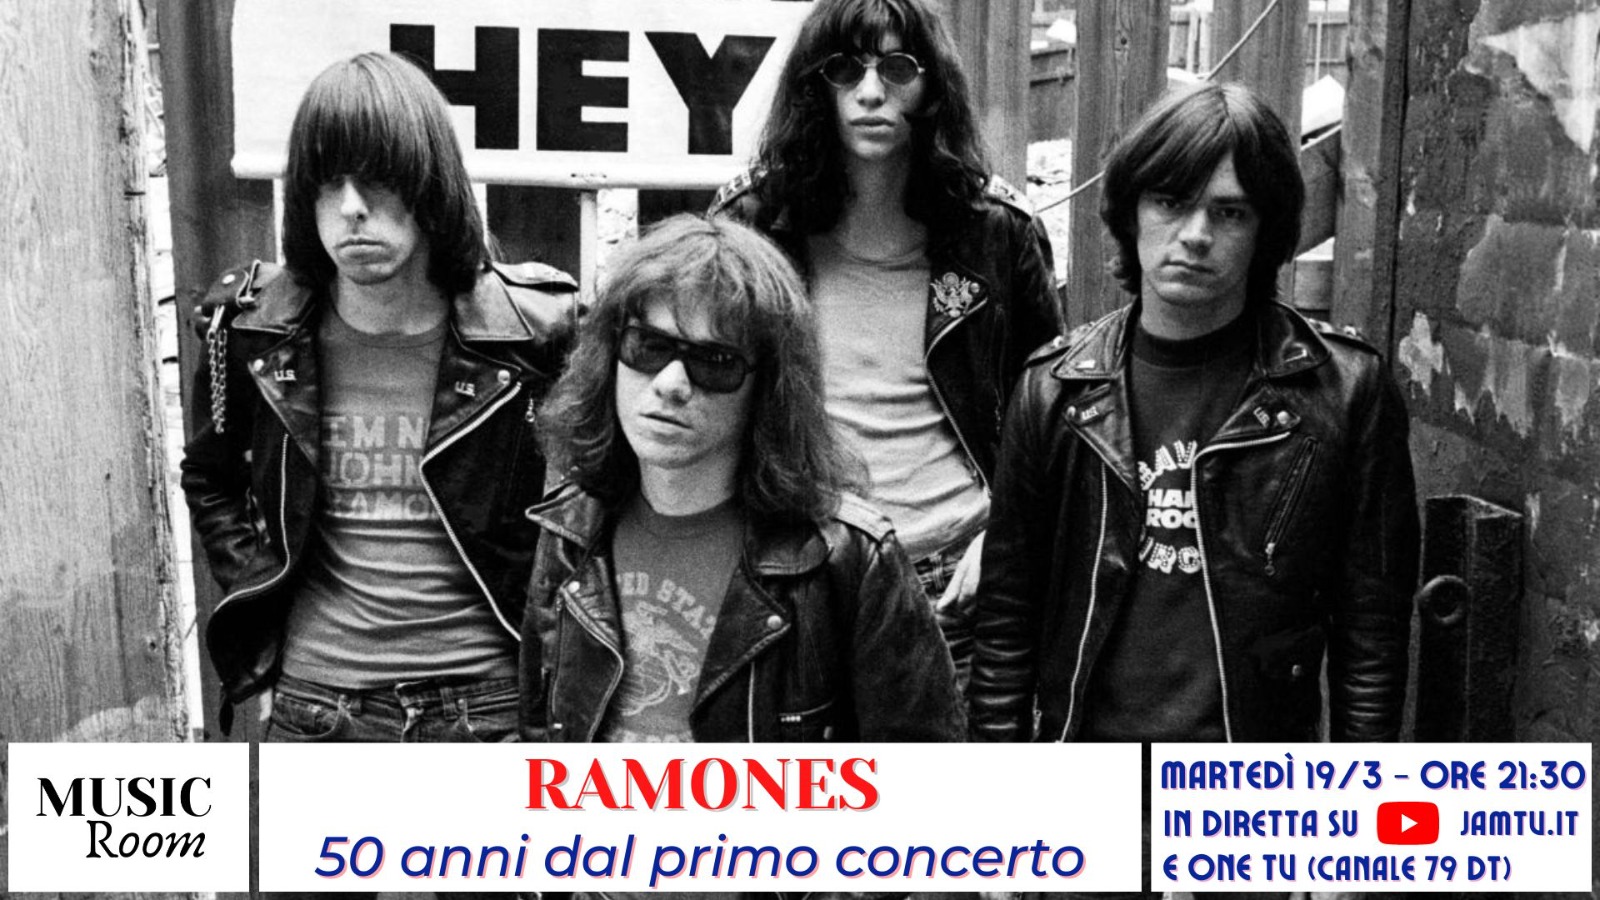 Ramones - 50 anni dal primo concerto